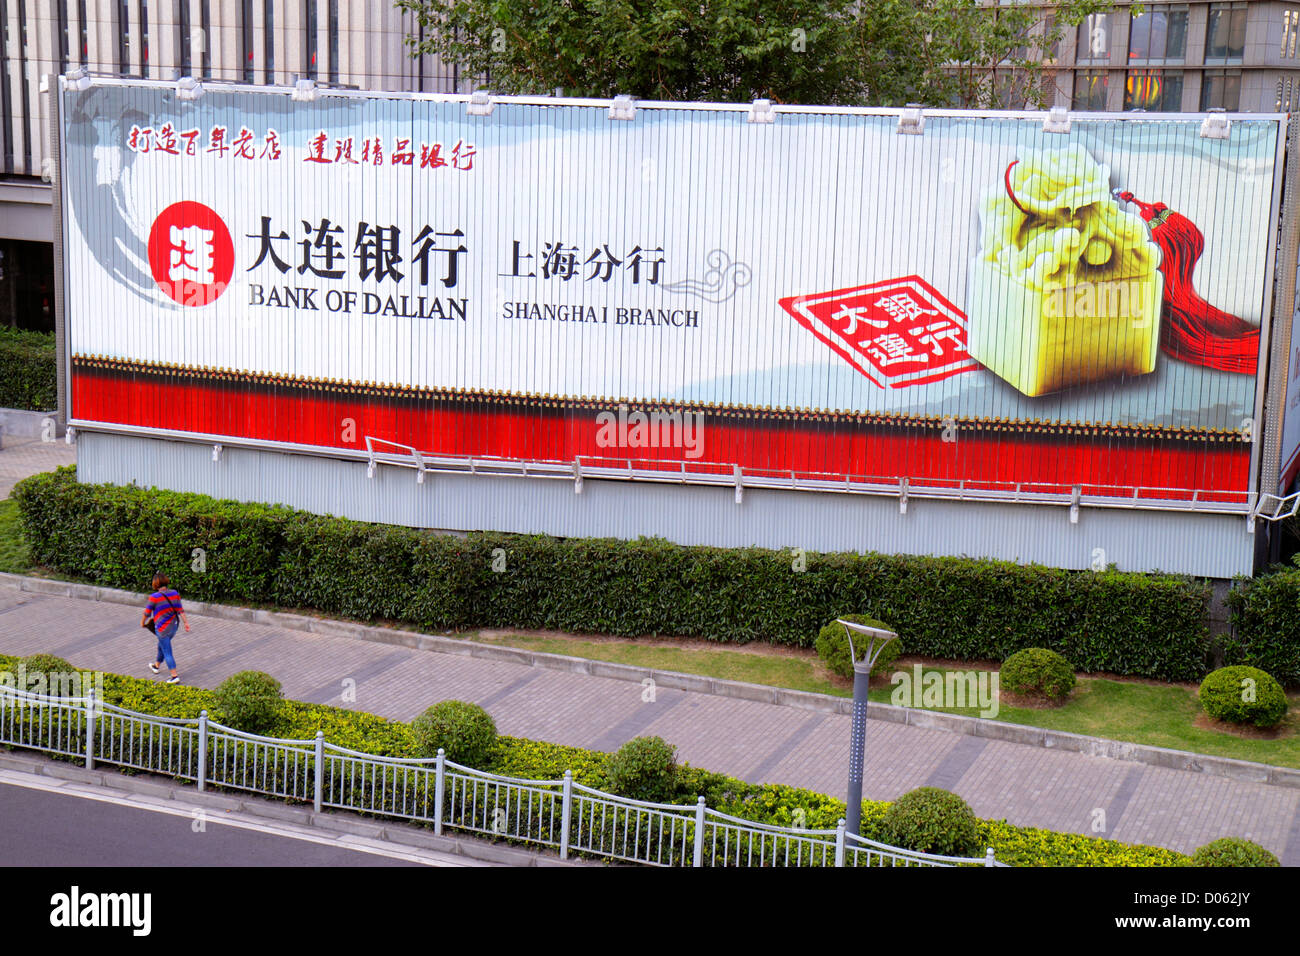 Shanghai China,Chinese Pudong Lujiazui Financial District,Lujiazui East Road,panneau d'affichage électronique,publicité,annonce,signe,publicité,publicité,publicité,publicité,publicité,a Banque D'Images